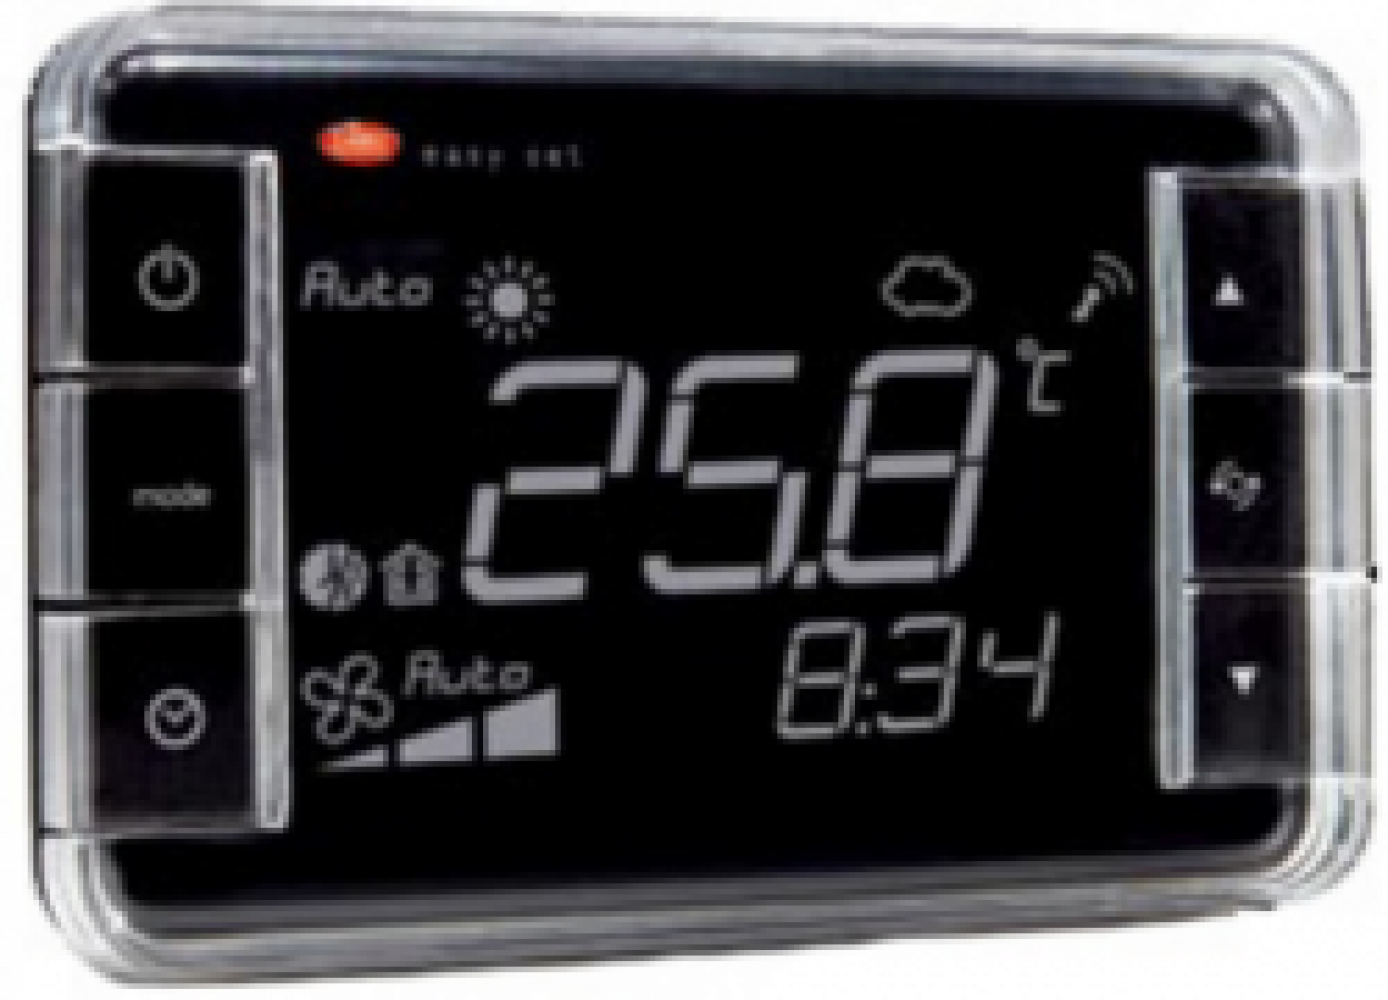 EW02TA1300 Термостат Easyset для отелей, контроль температуры, корпус белого цвета, &quot;прямое&quot; отображение, подсветка